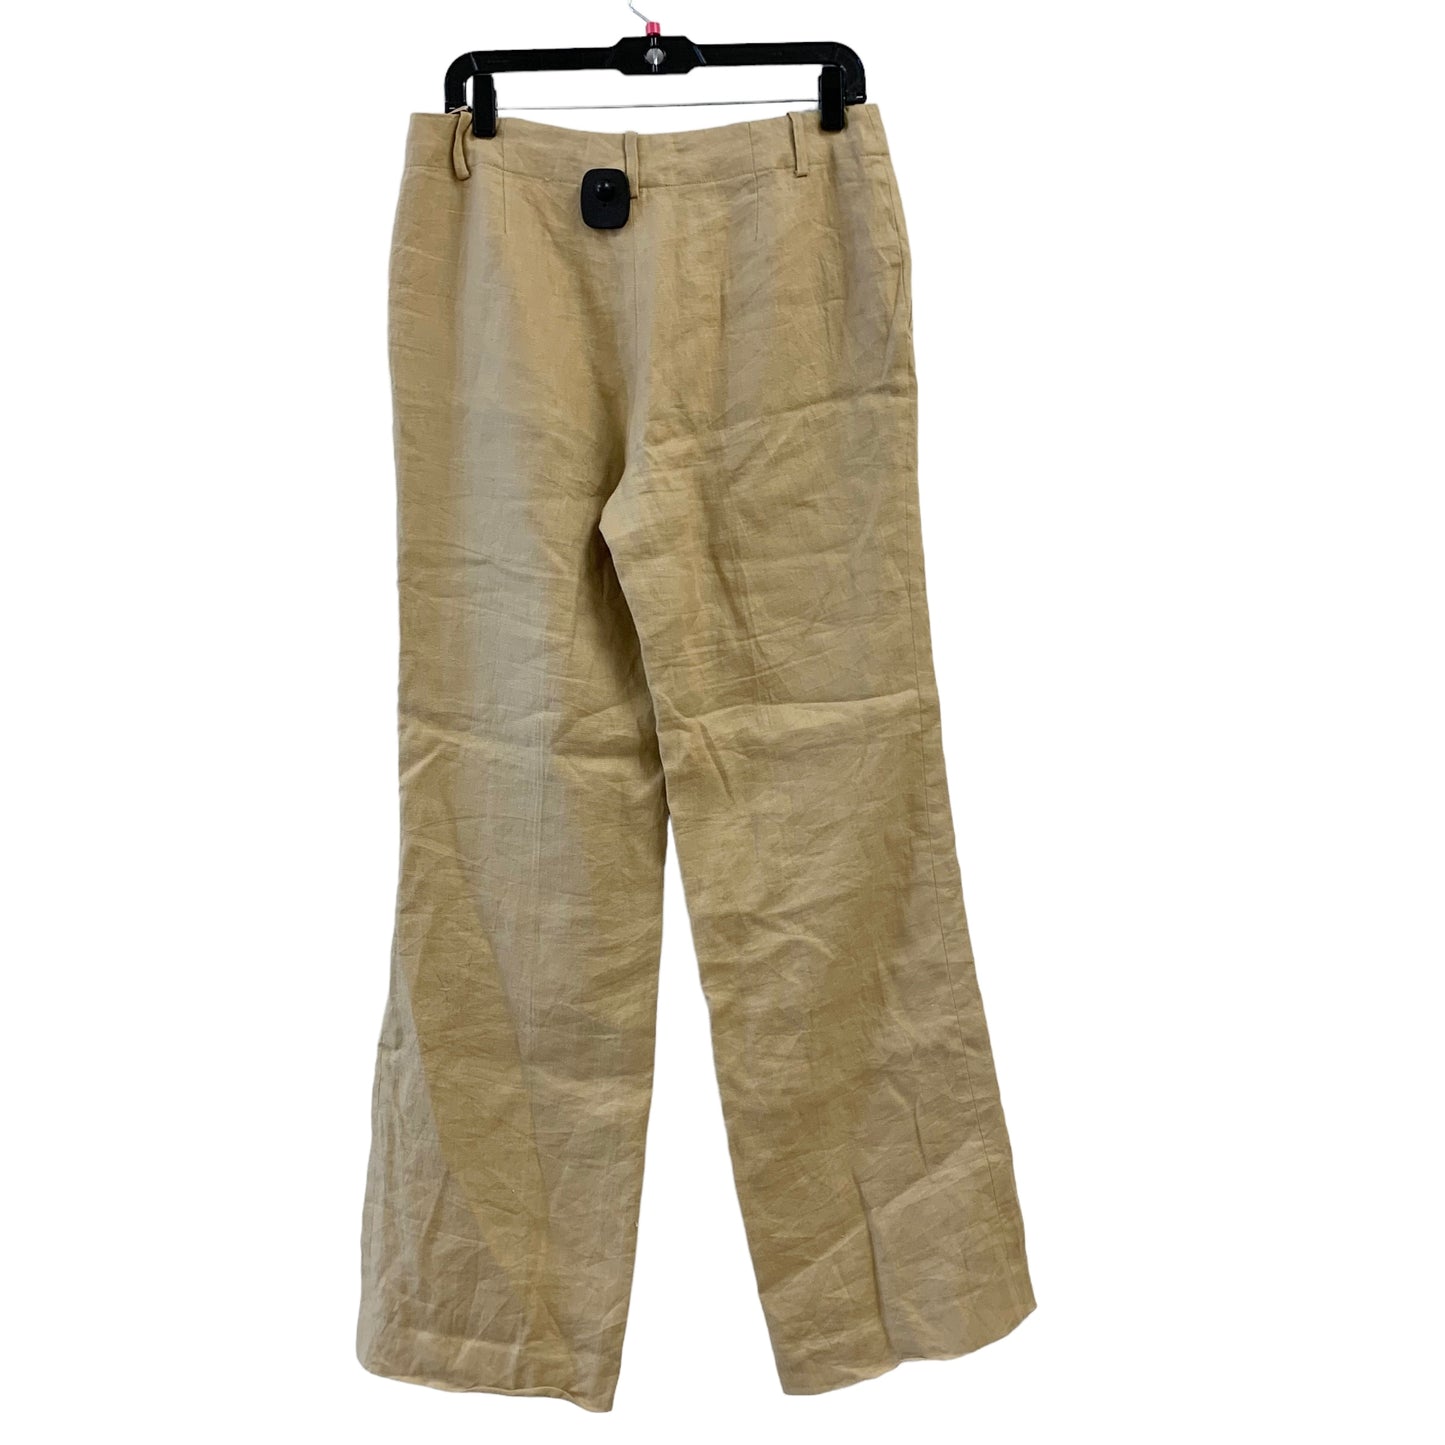 Pants Linen By Lauren By Ralph Lauren  Size: 6